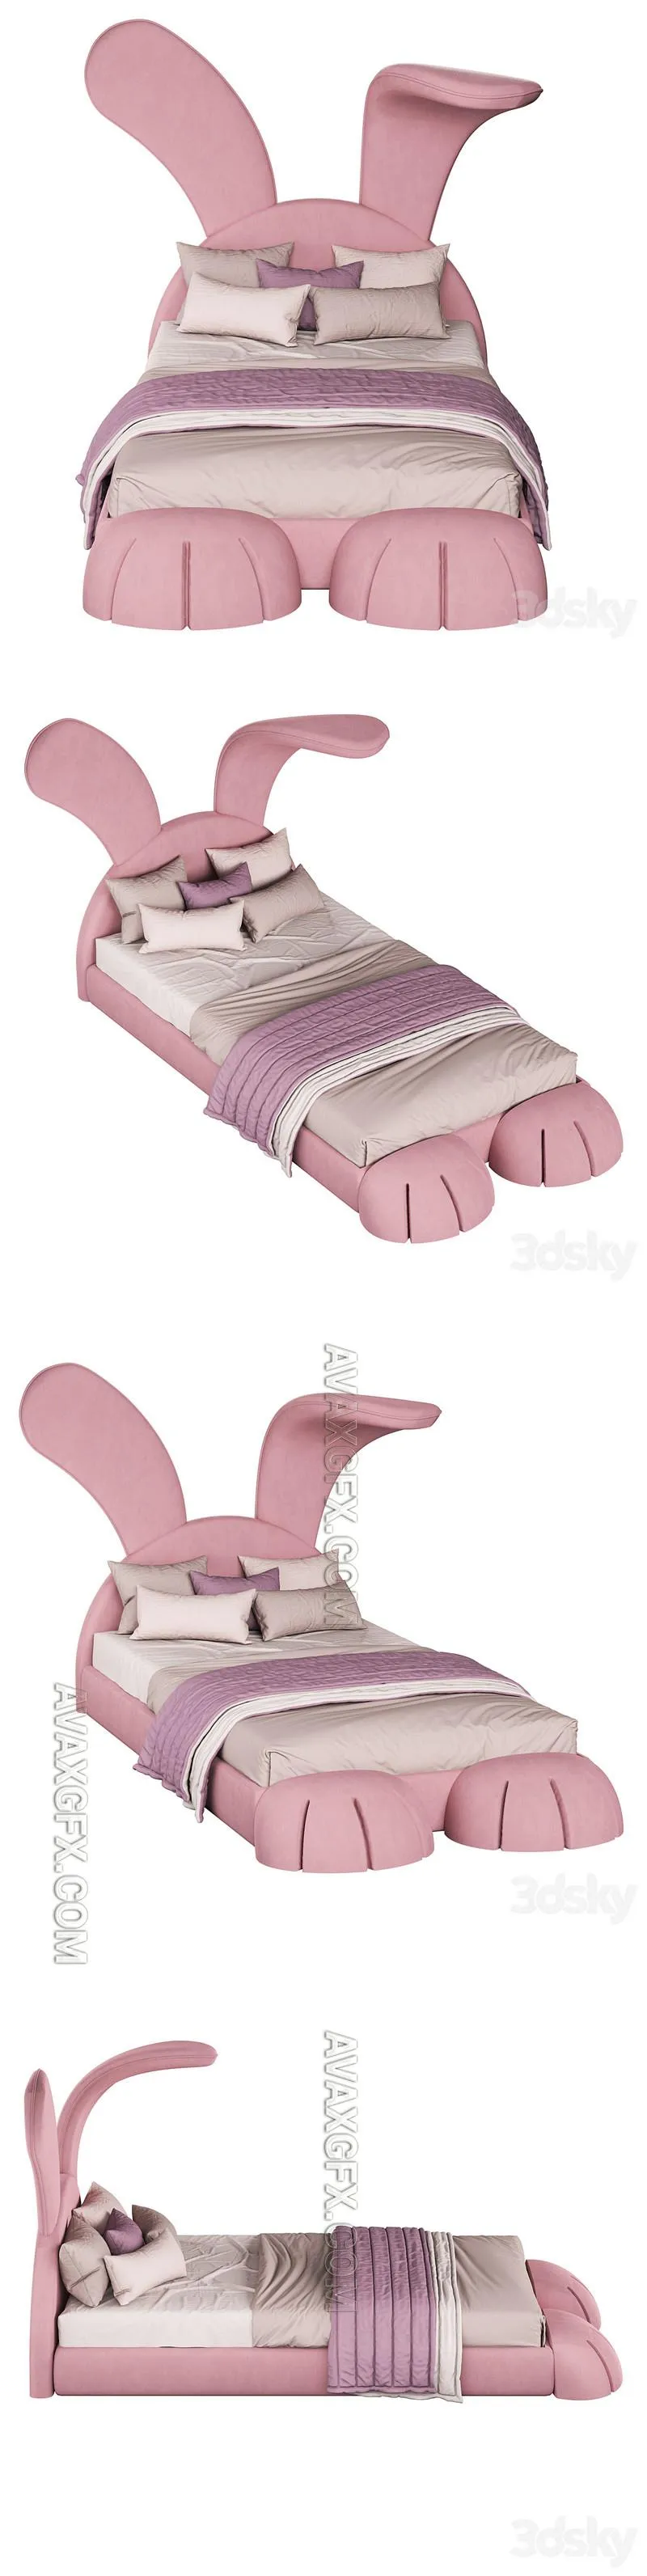 Mr.bunny bed - 3D Model